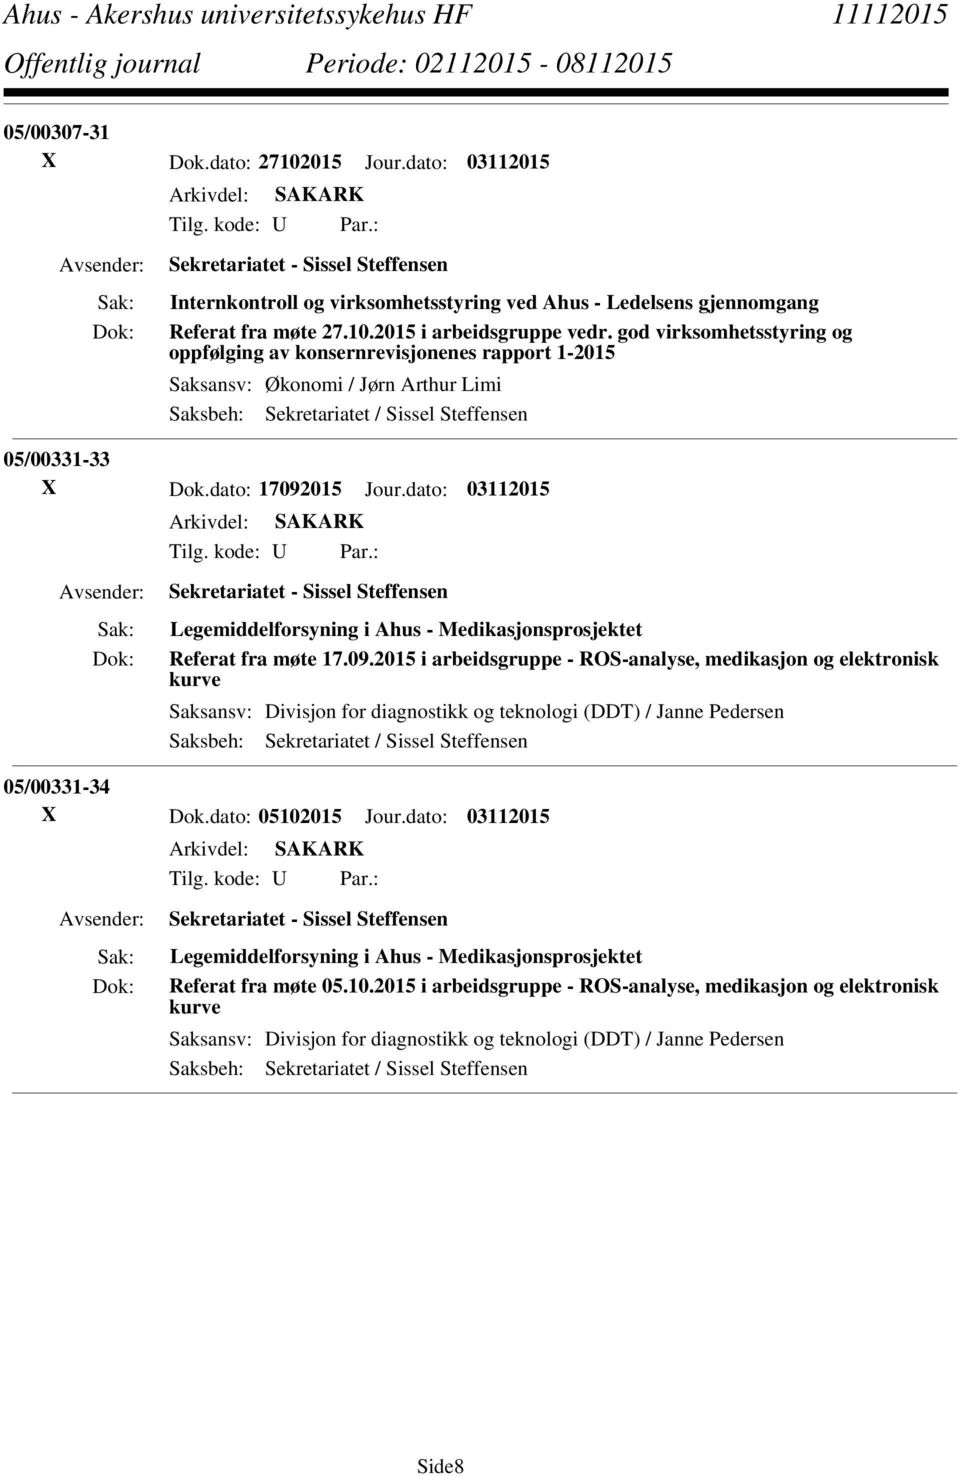 dato: 03112015 Tilg. kode: U Par.: Sekretariatet - Sissel Steffensen Legemiddelforsyning i Ahus - Medikasjonsprosjektet Referat fra møte 17.09.